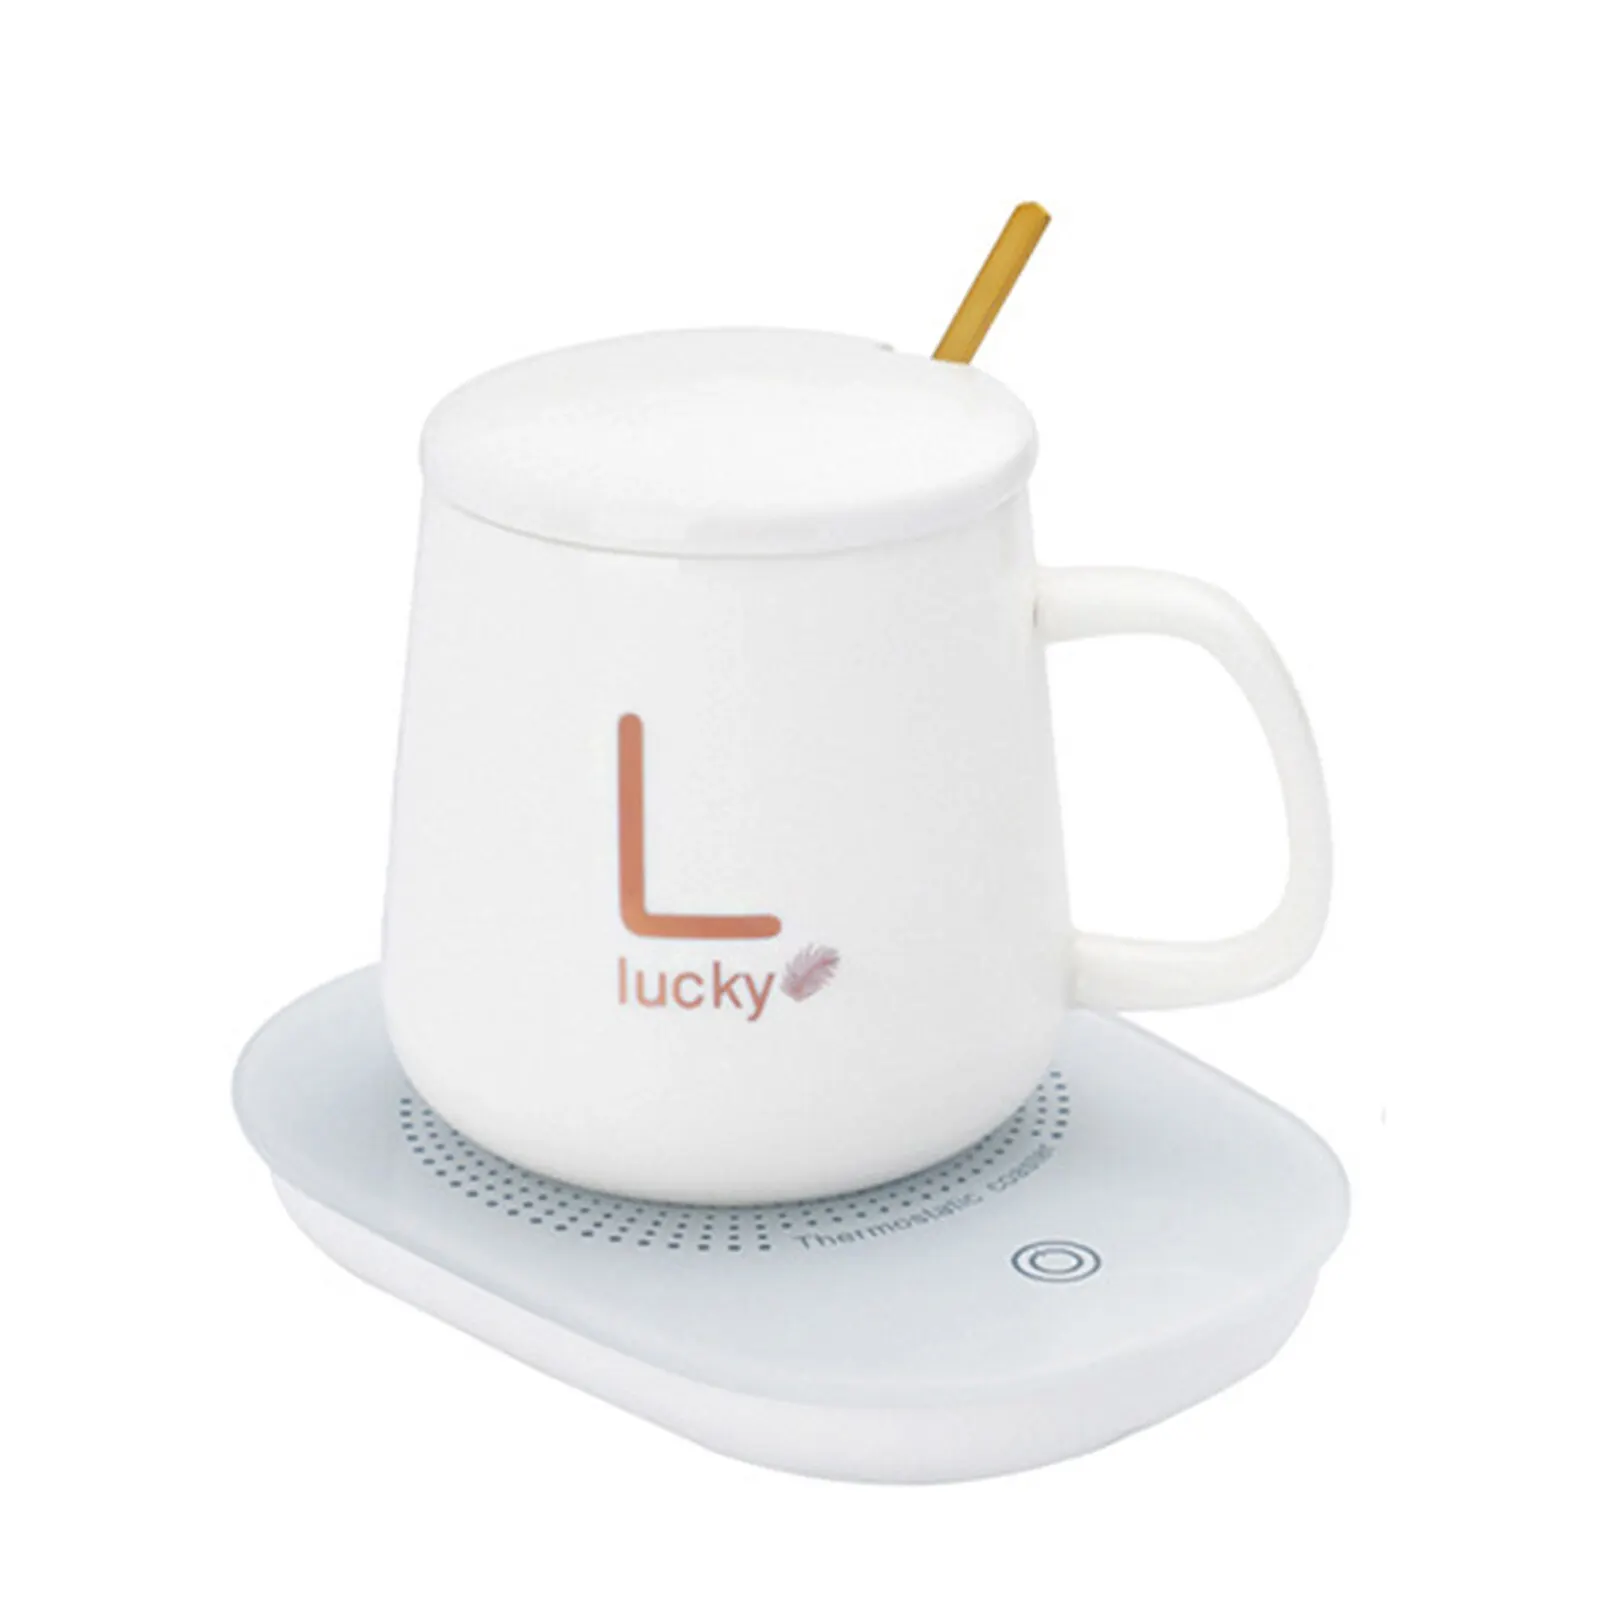 Lucky Tasse chauffante électrique LUCKY avec une température de 55